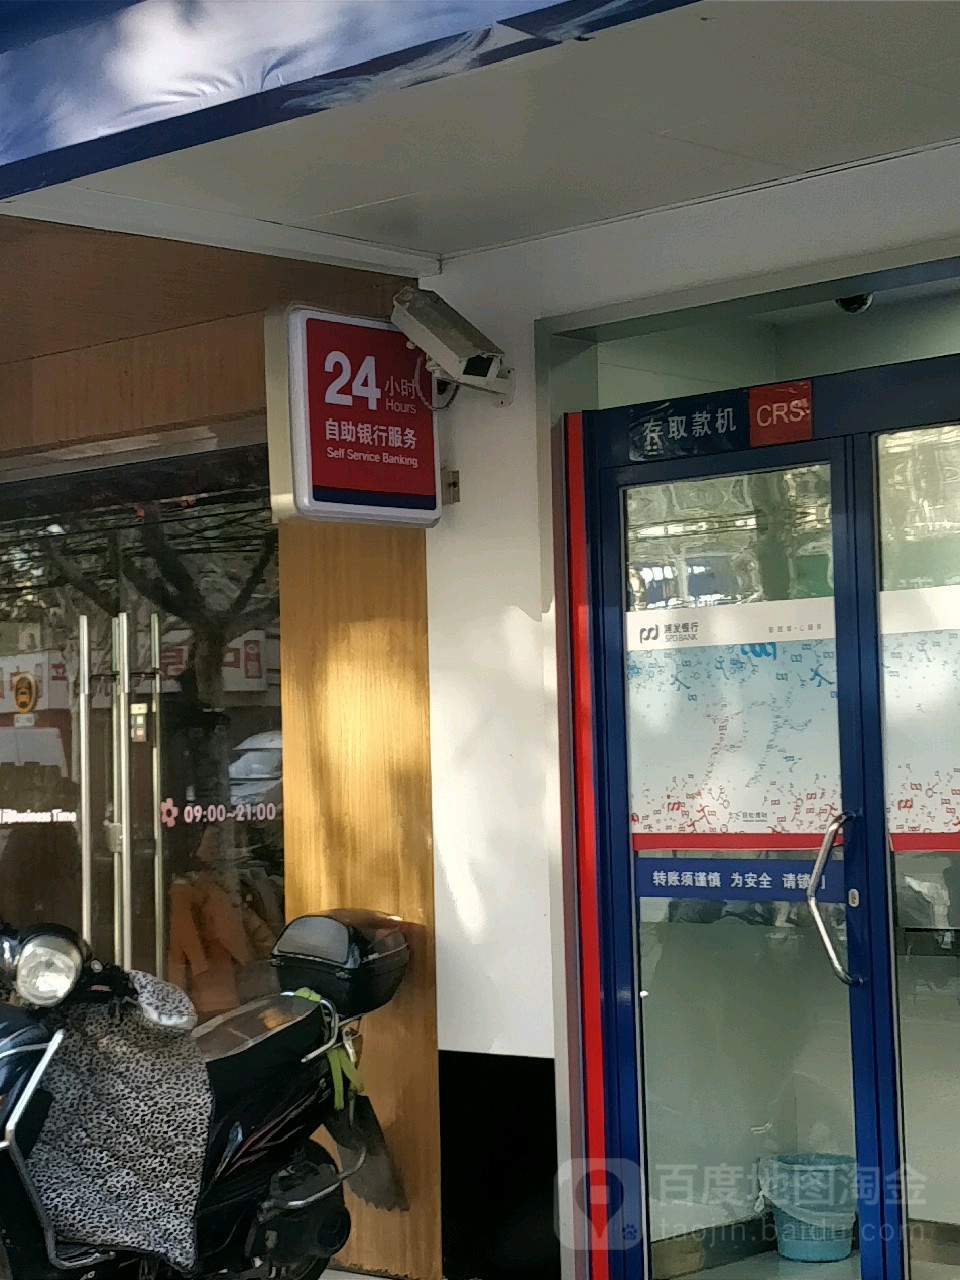 上海浦東發展銀行ATM